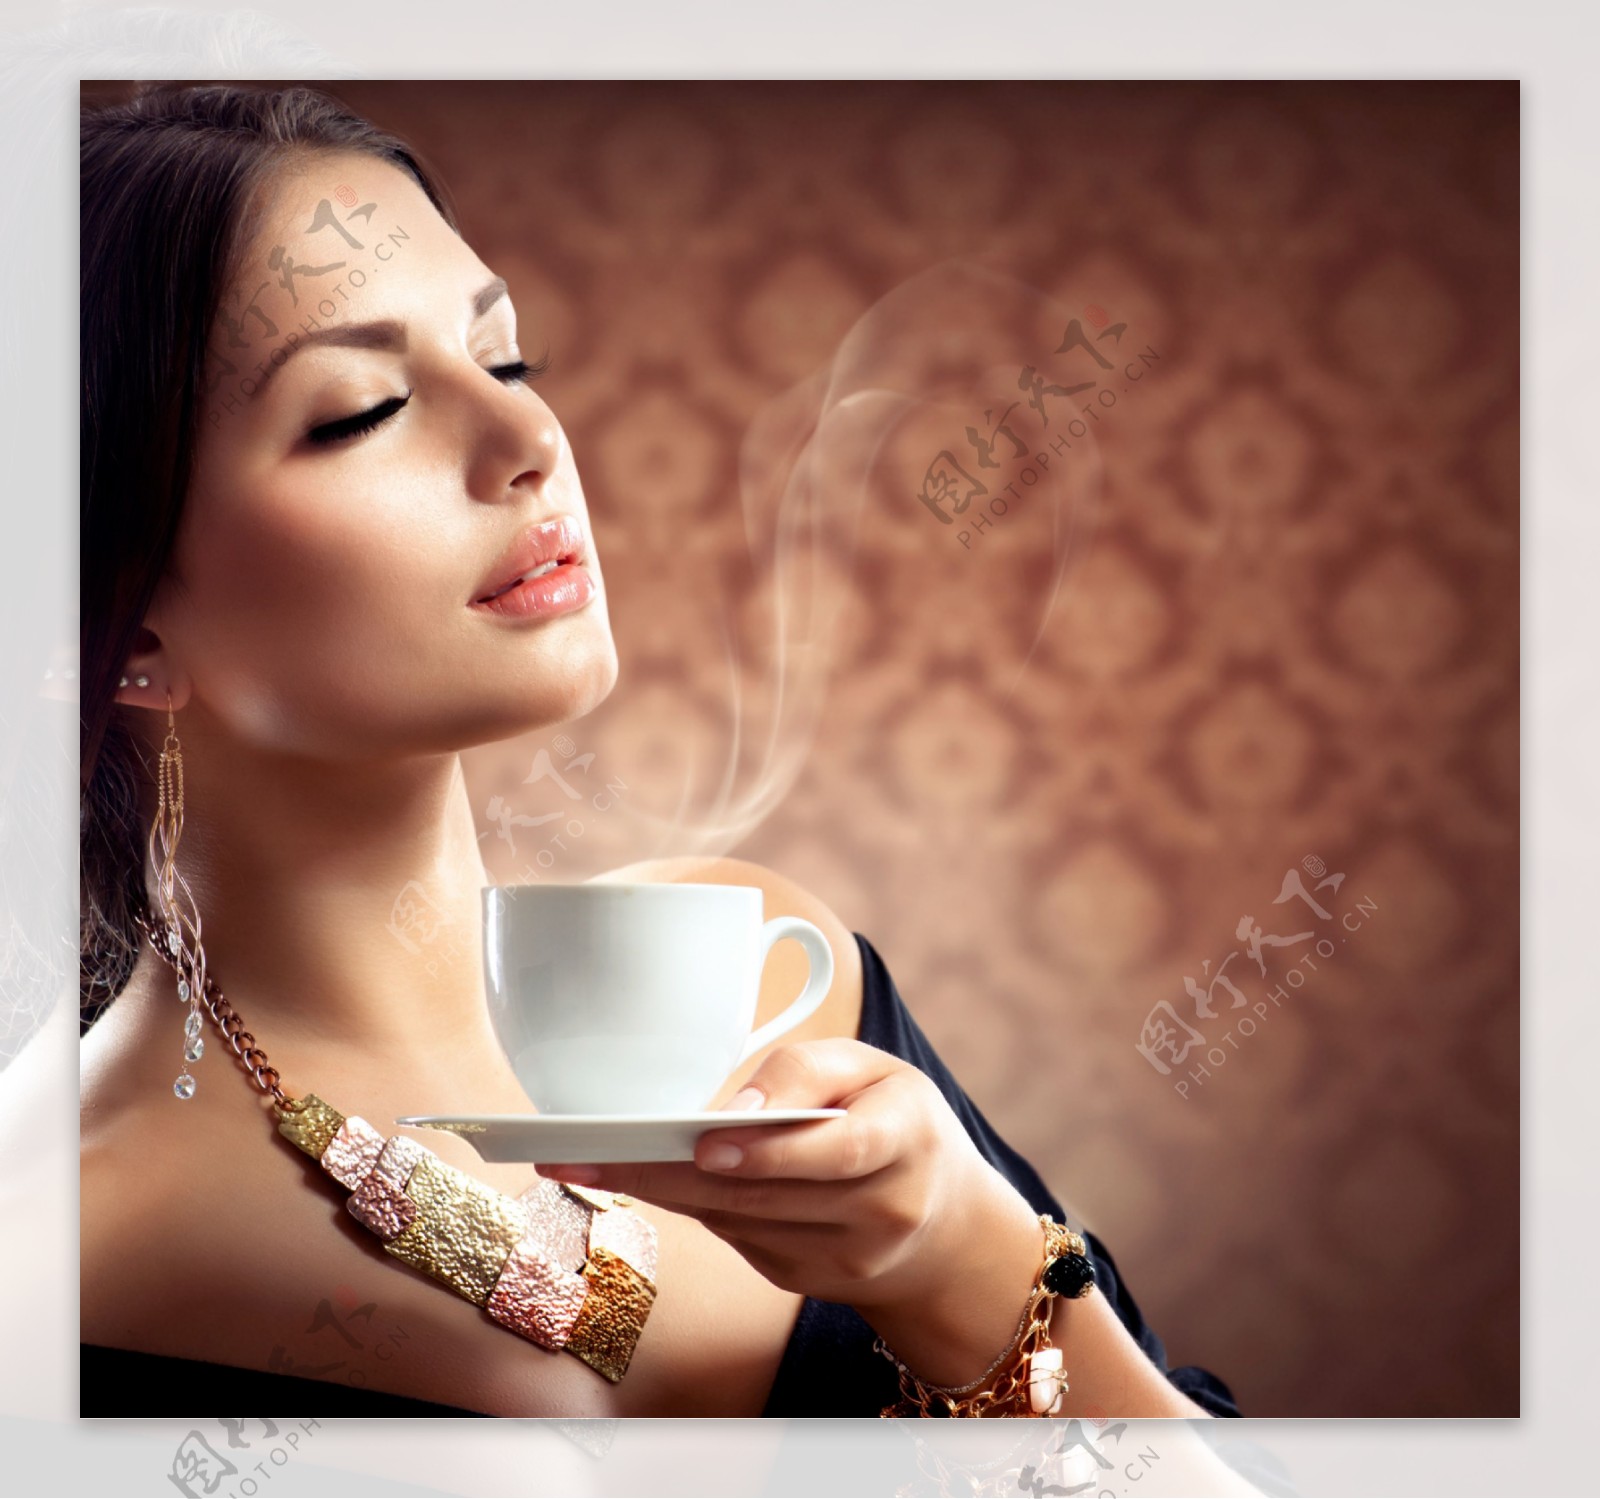 正在喝咖啡的美女图片